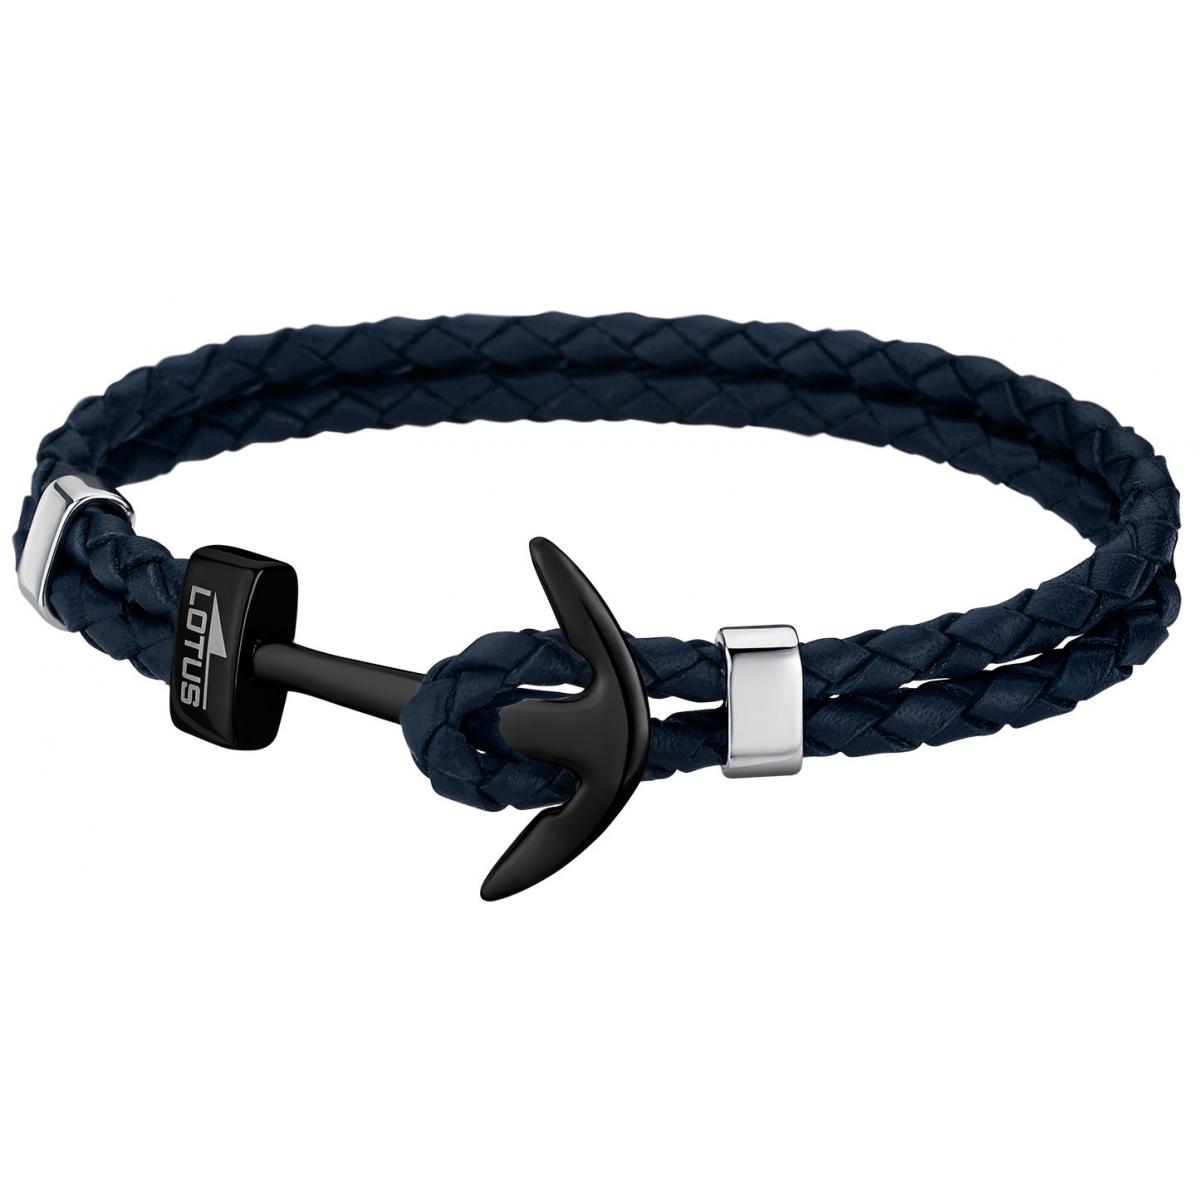 Promo : Bracelet Lotus Style LS1832-2-7 - Bracelet Urban Man Double Tressés Bleu Ancre Noir Homme